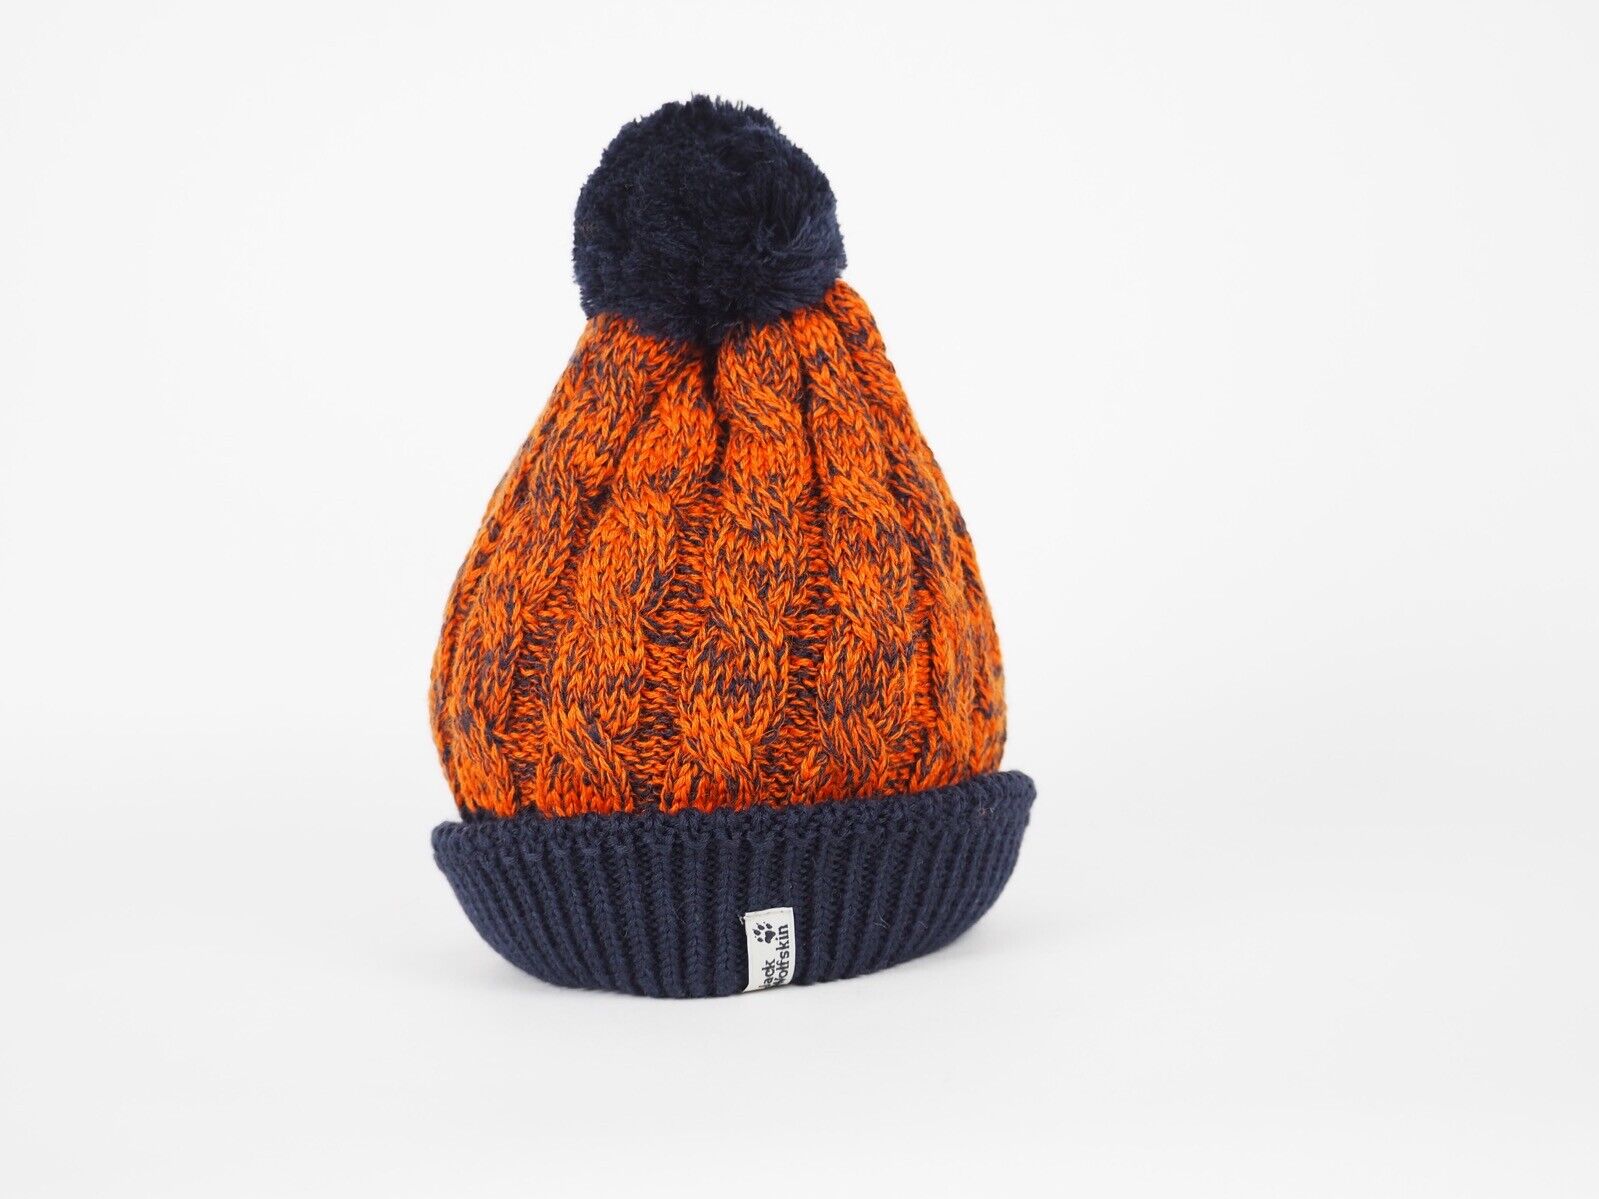 New Jack Wolfskin Kids Bobble Hat Knitwear Warm Winter Hat 1903071 - London Top Style